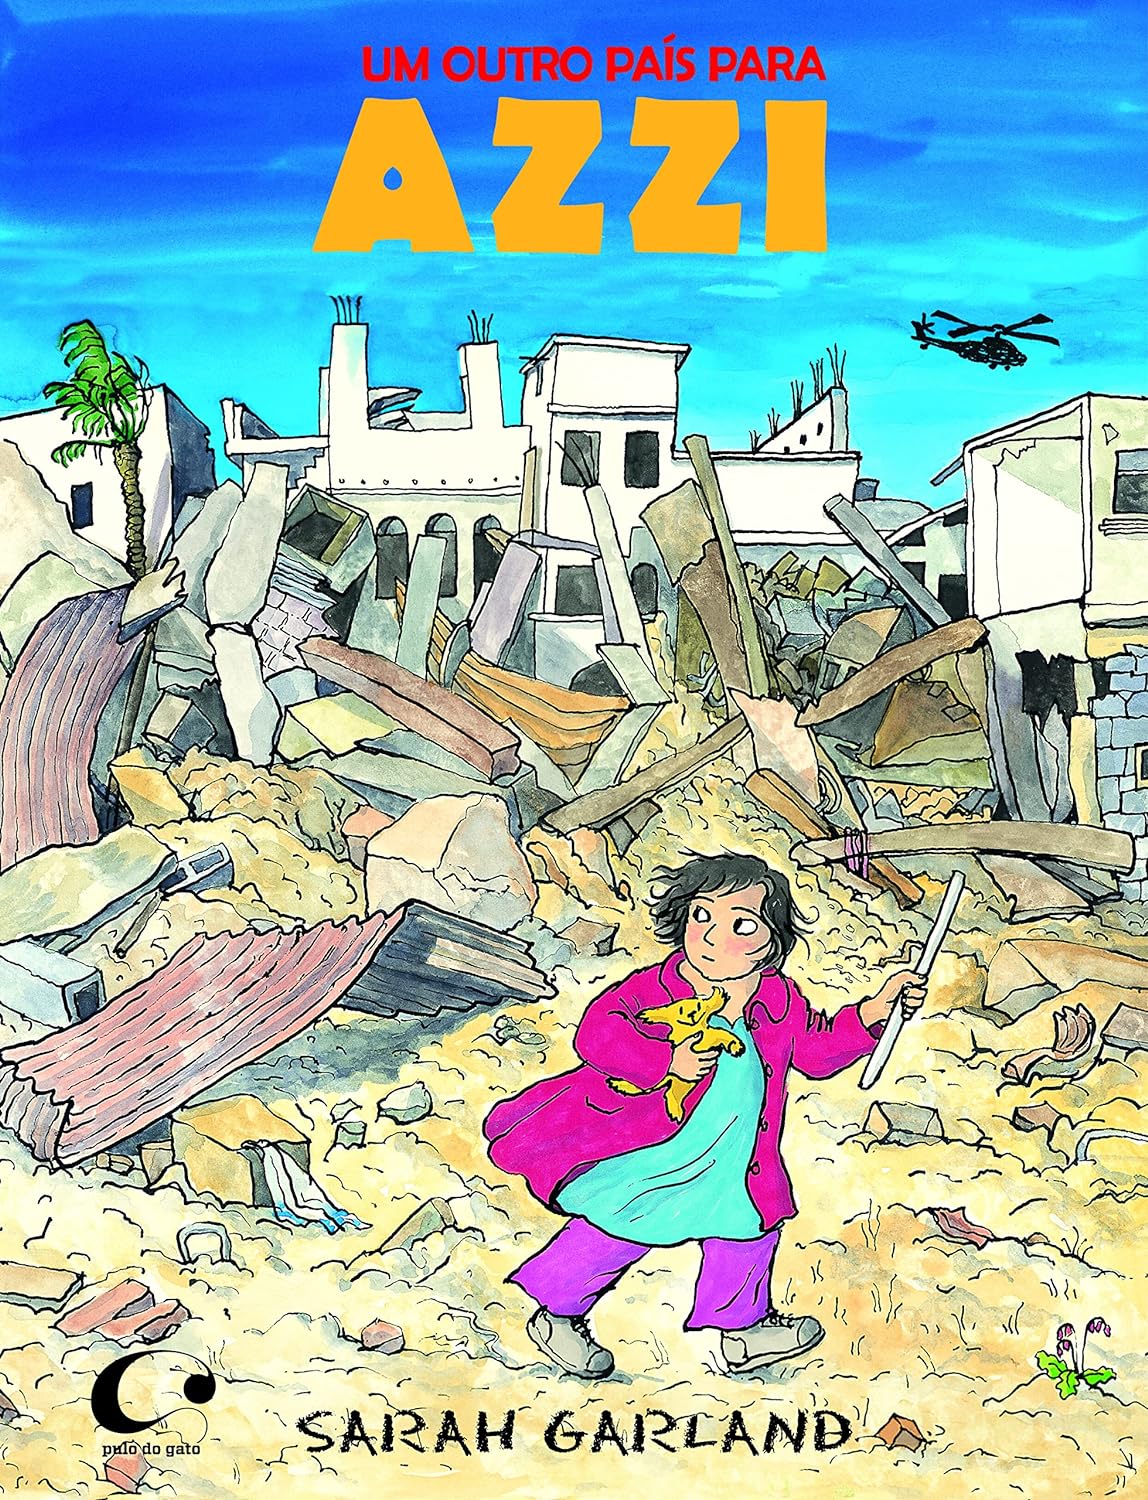 Capa do livro Um outro país para Azzi